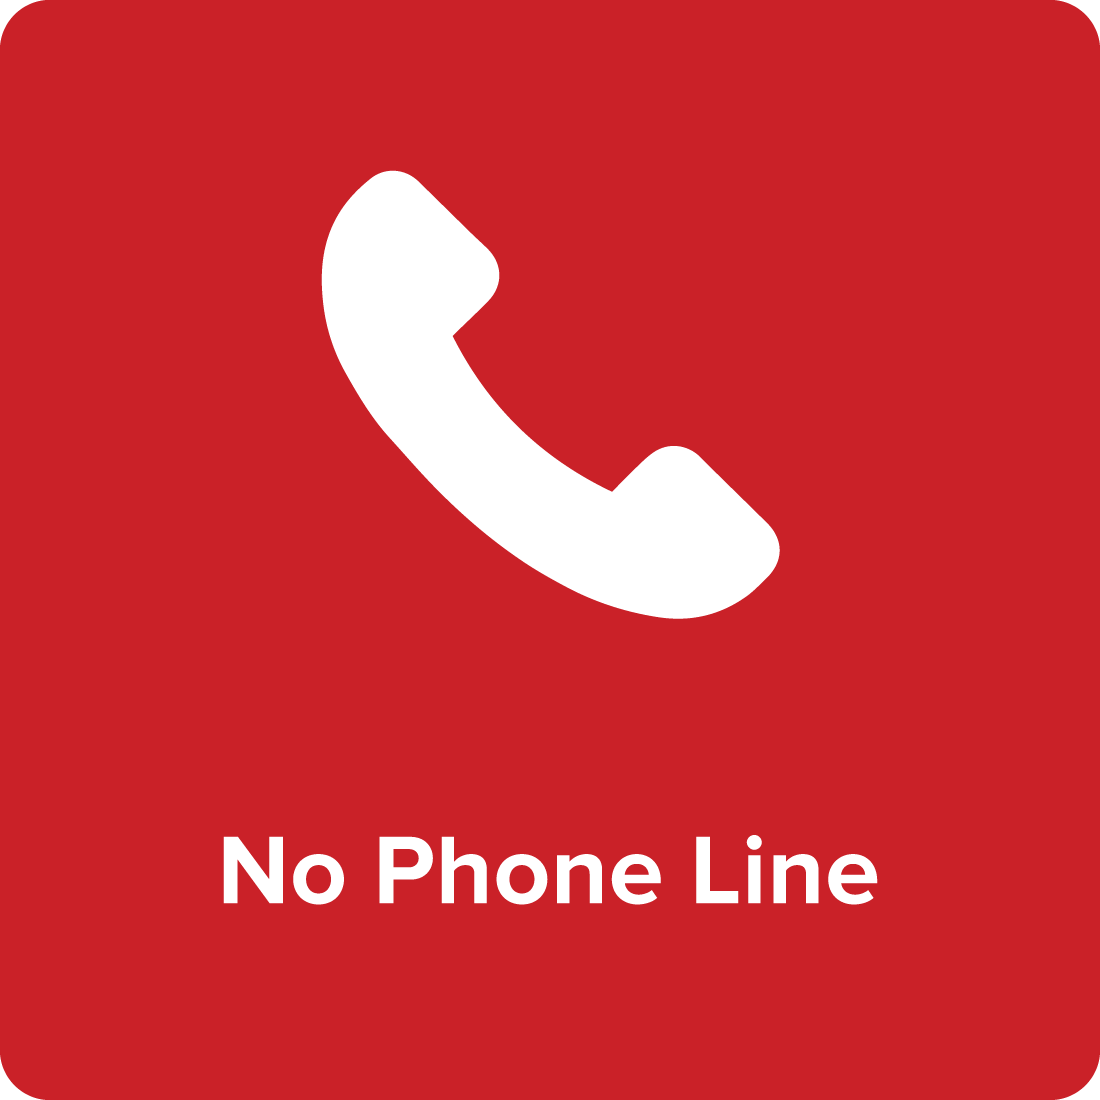 Nophoneline.png